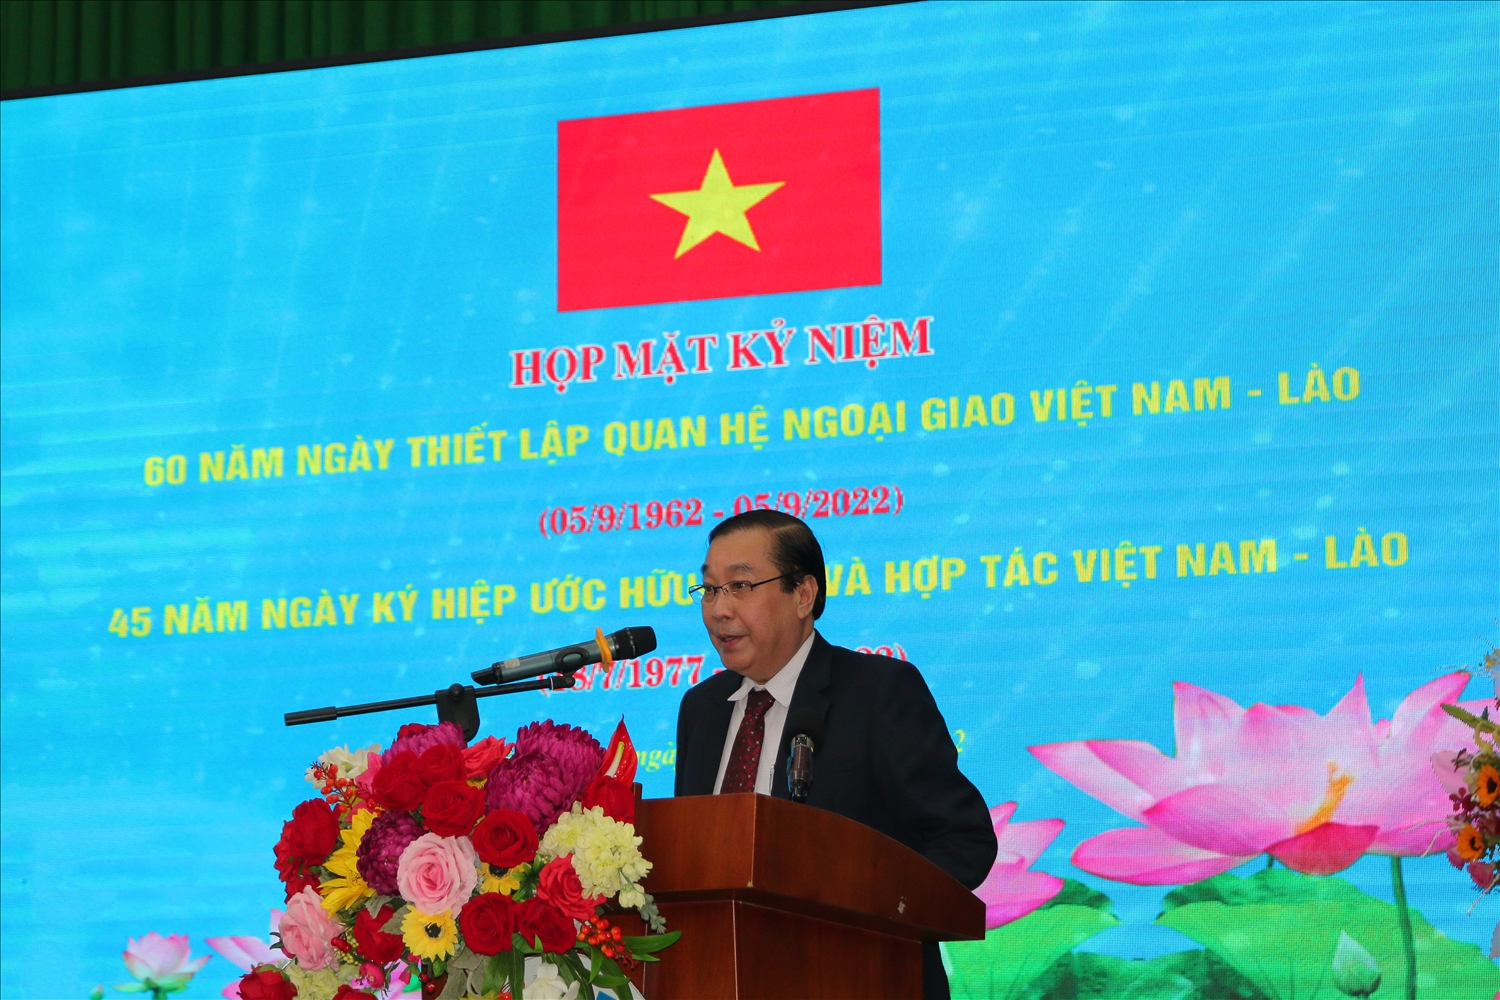 Ông Văn Xay Xay Se Na, Phó Tổng Lãnh sự Cộng hòa Dân chủ Nhân dân Lào tại TP. Hồ Chí Minh 